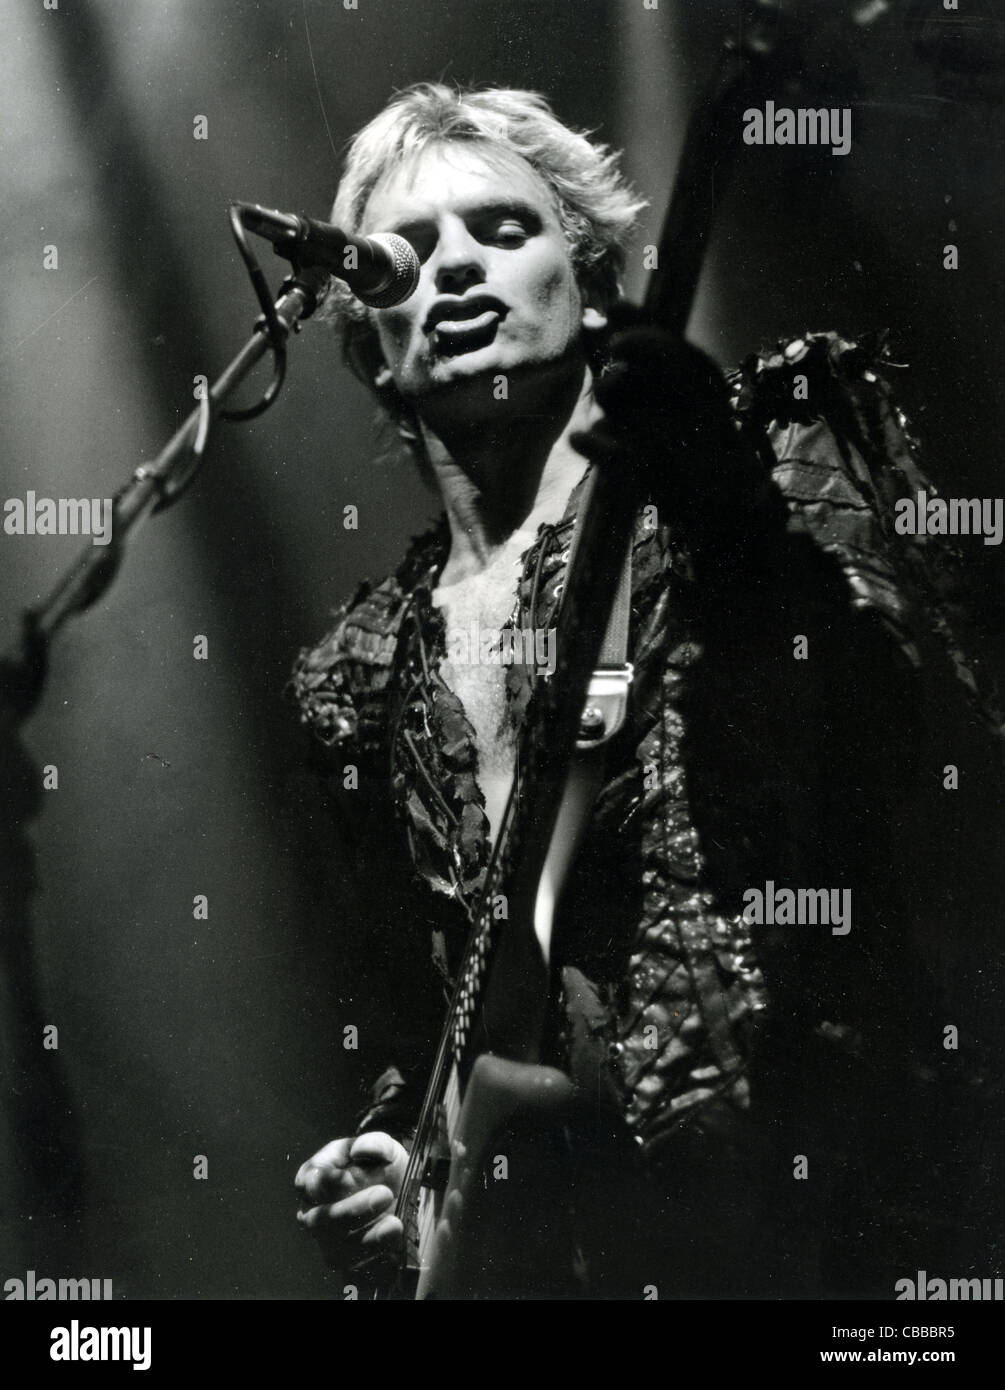 Le groupe de rock britannique de police avec Sting en décembre 1983. Photo D Hartas Banque D'Images